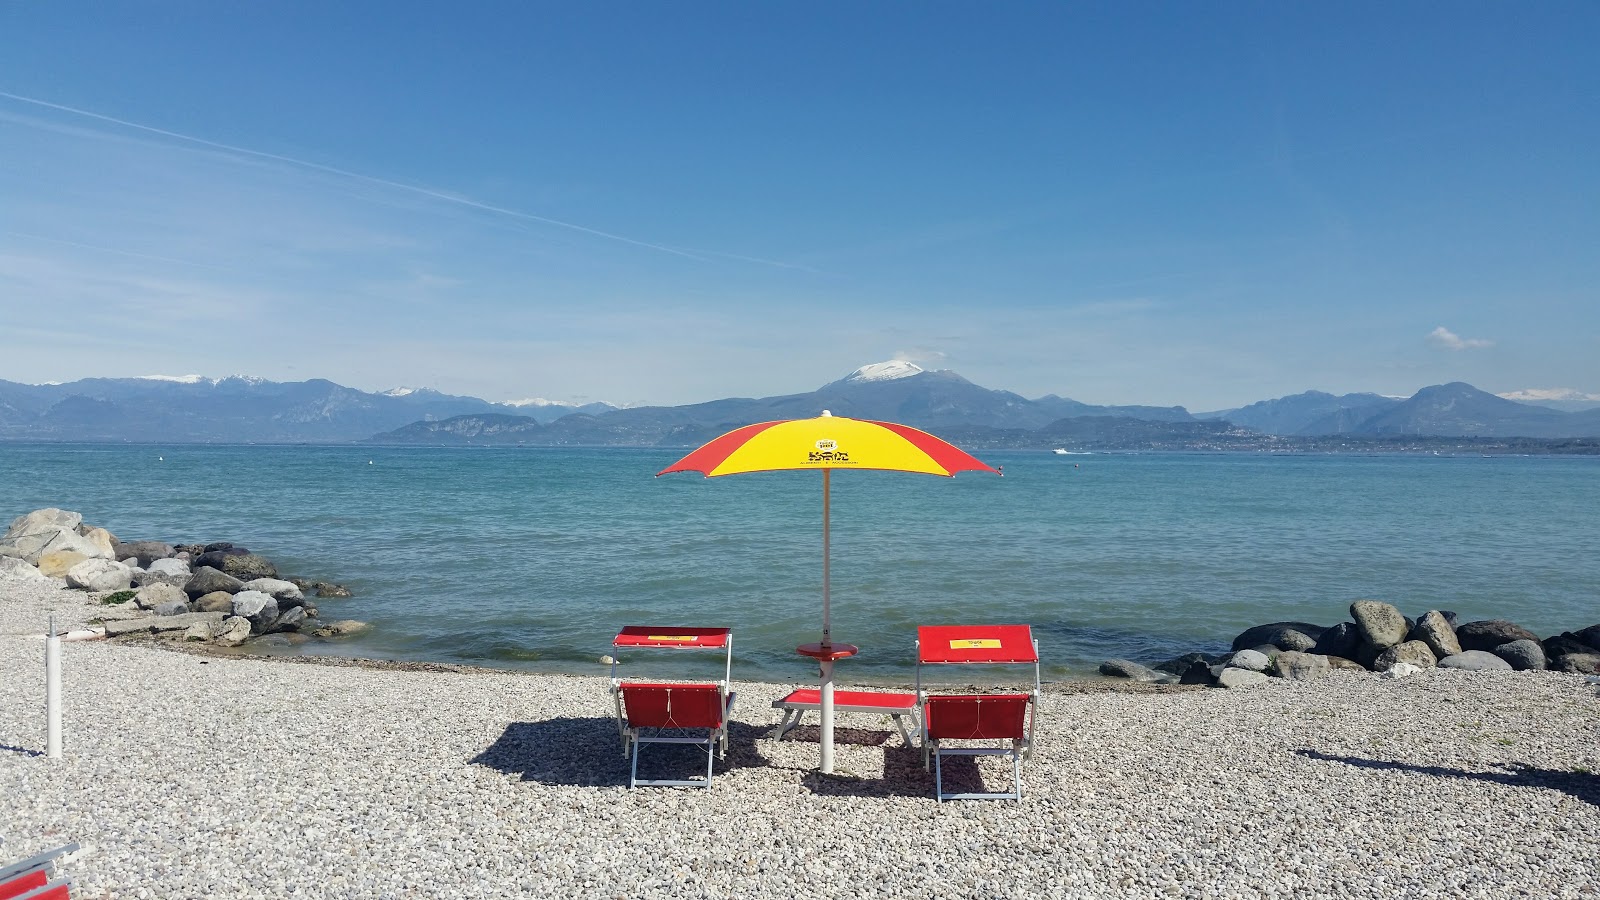 Foto af Spiaggia Peschiera - populært sted blandt afslapningskendere